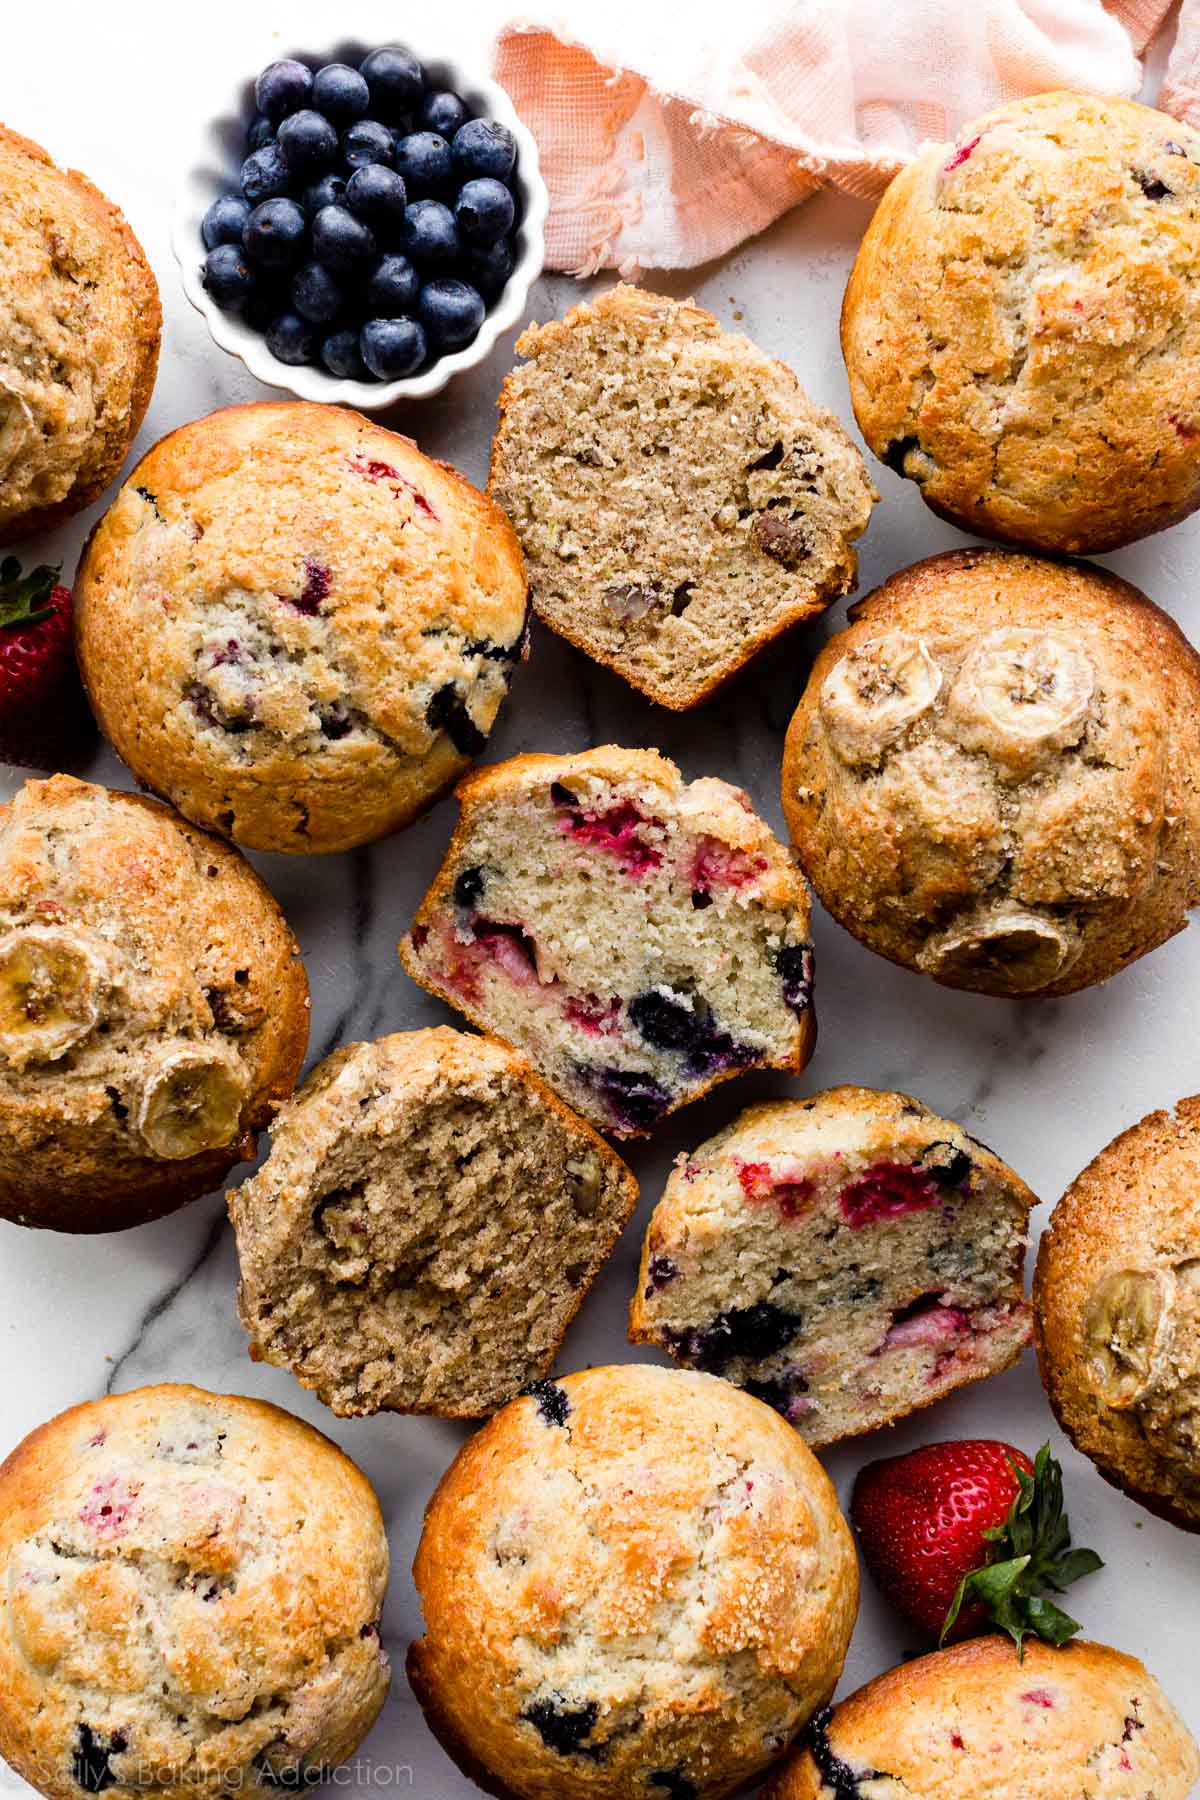 muffins de style boulangerie, y compris muffins aux bananes et muffins aux petits fruits